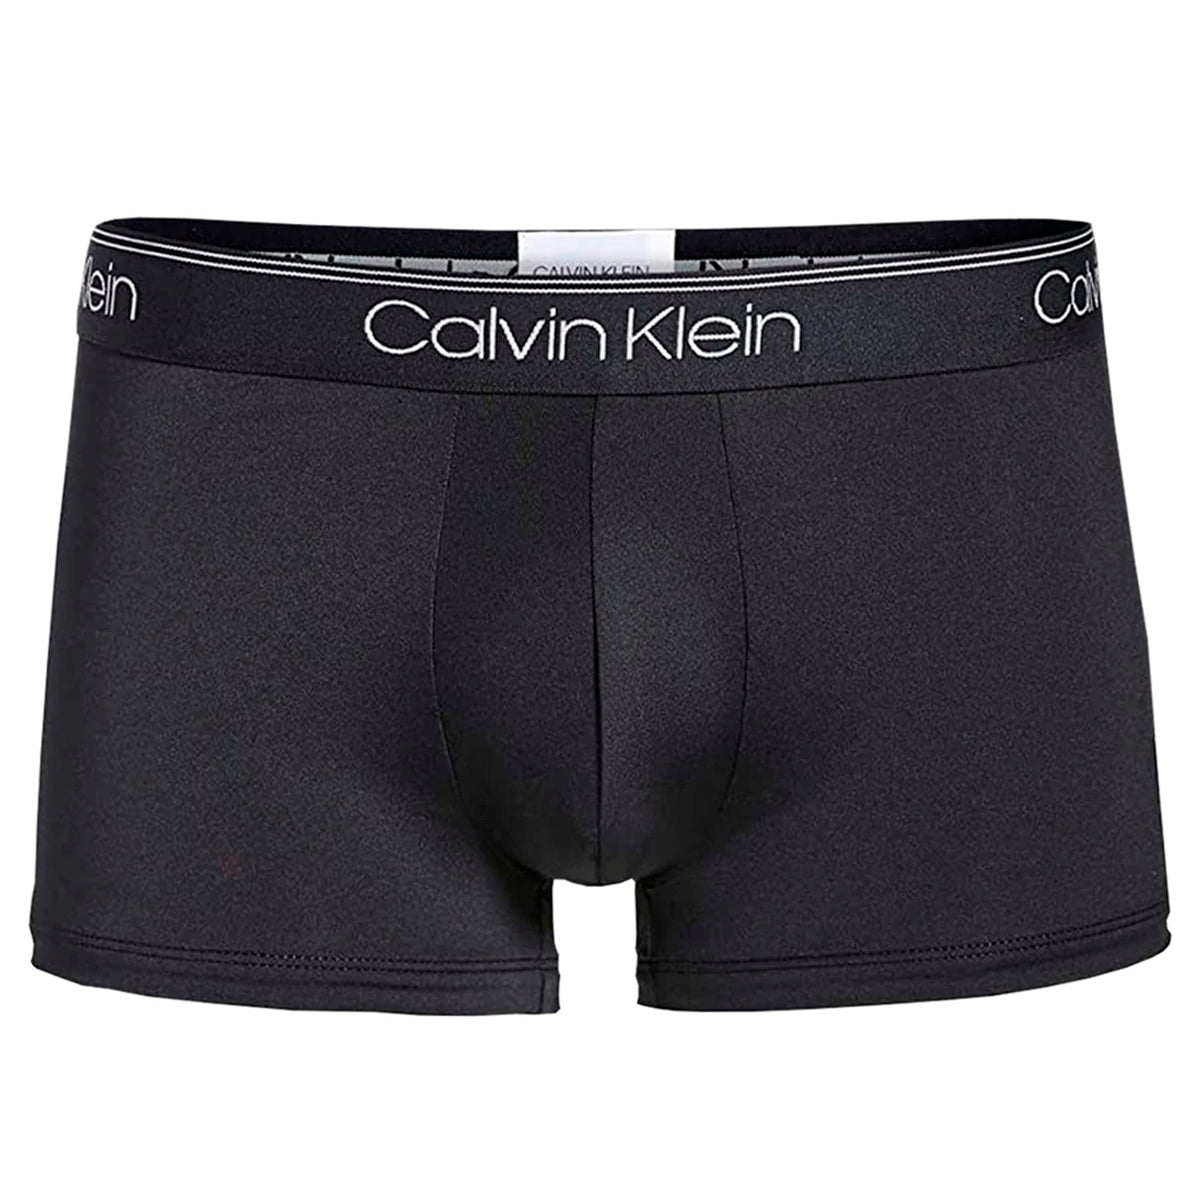 Calvin Klein - Low Waist Trunk : Black